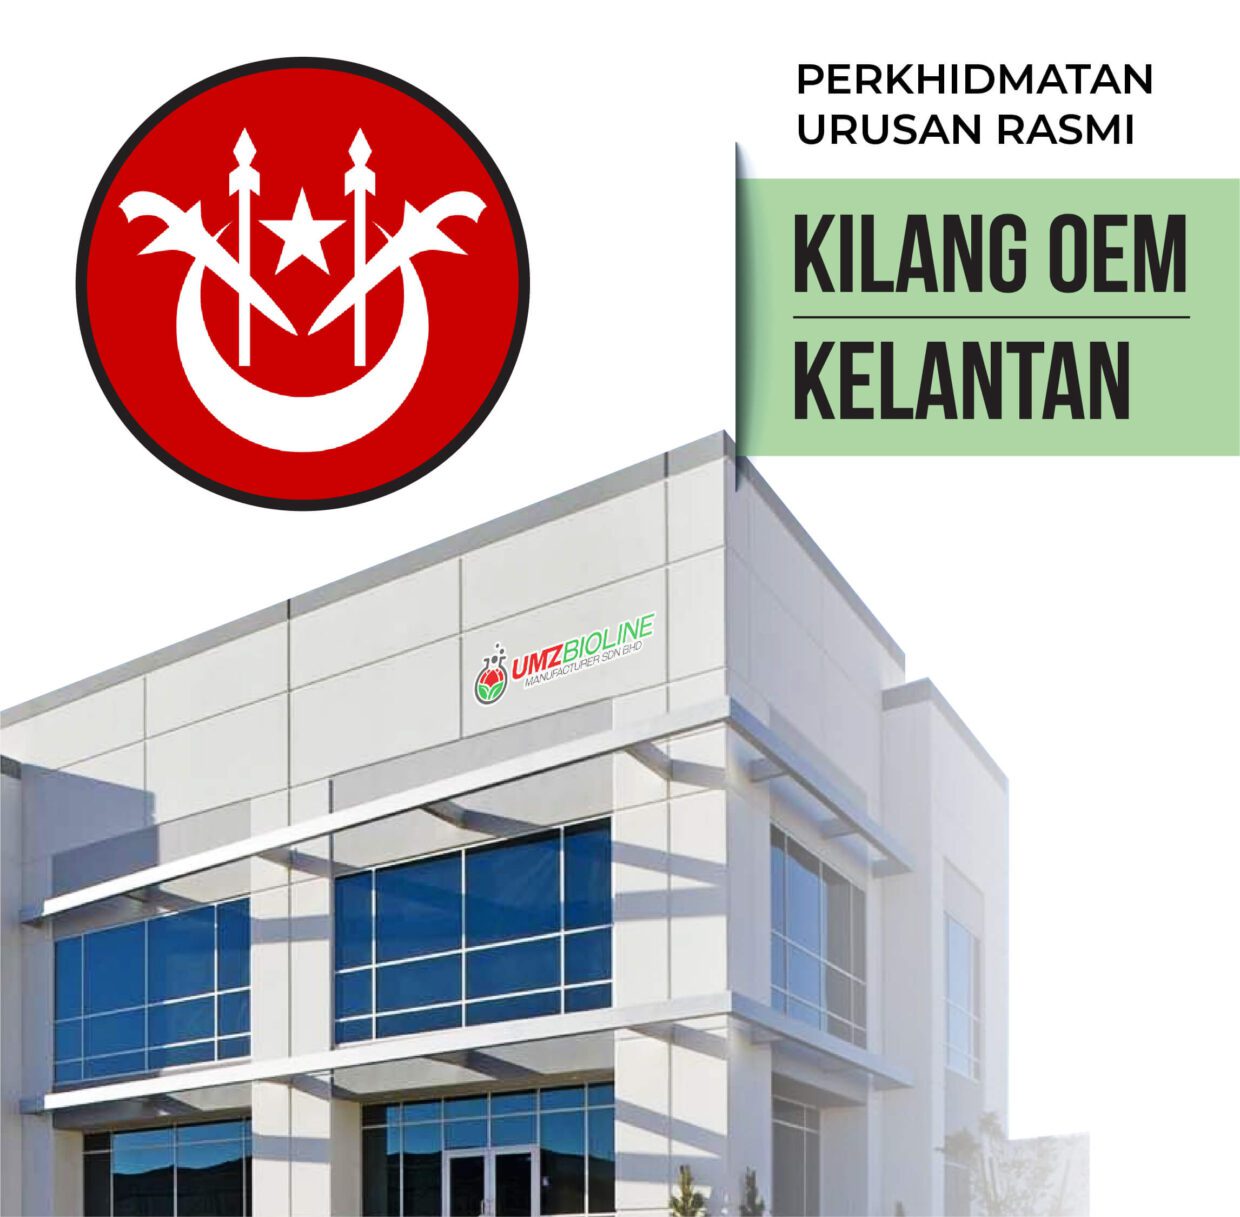 Perkhidmatan OEM Kelantan